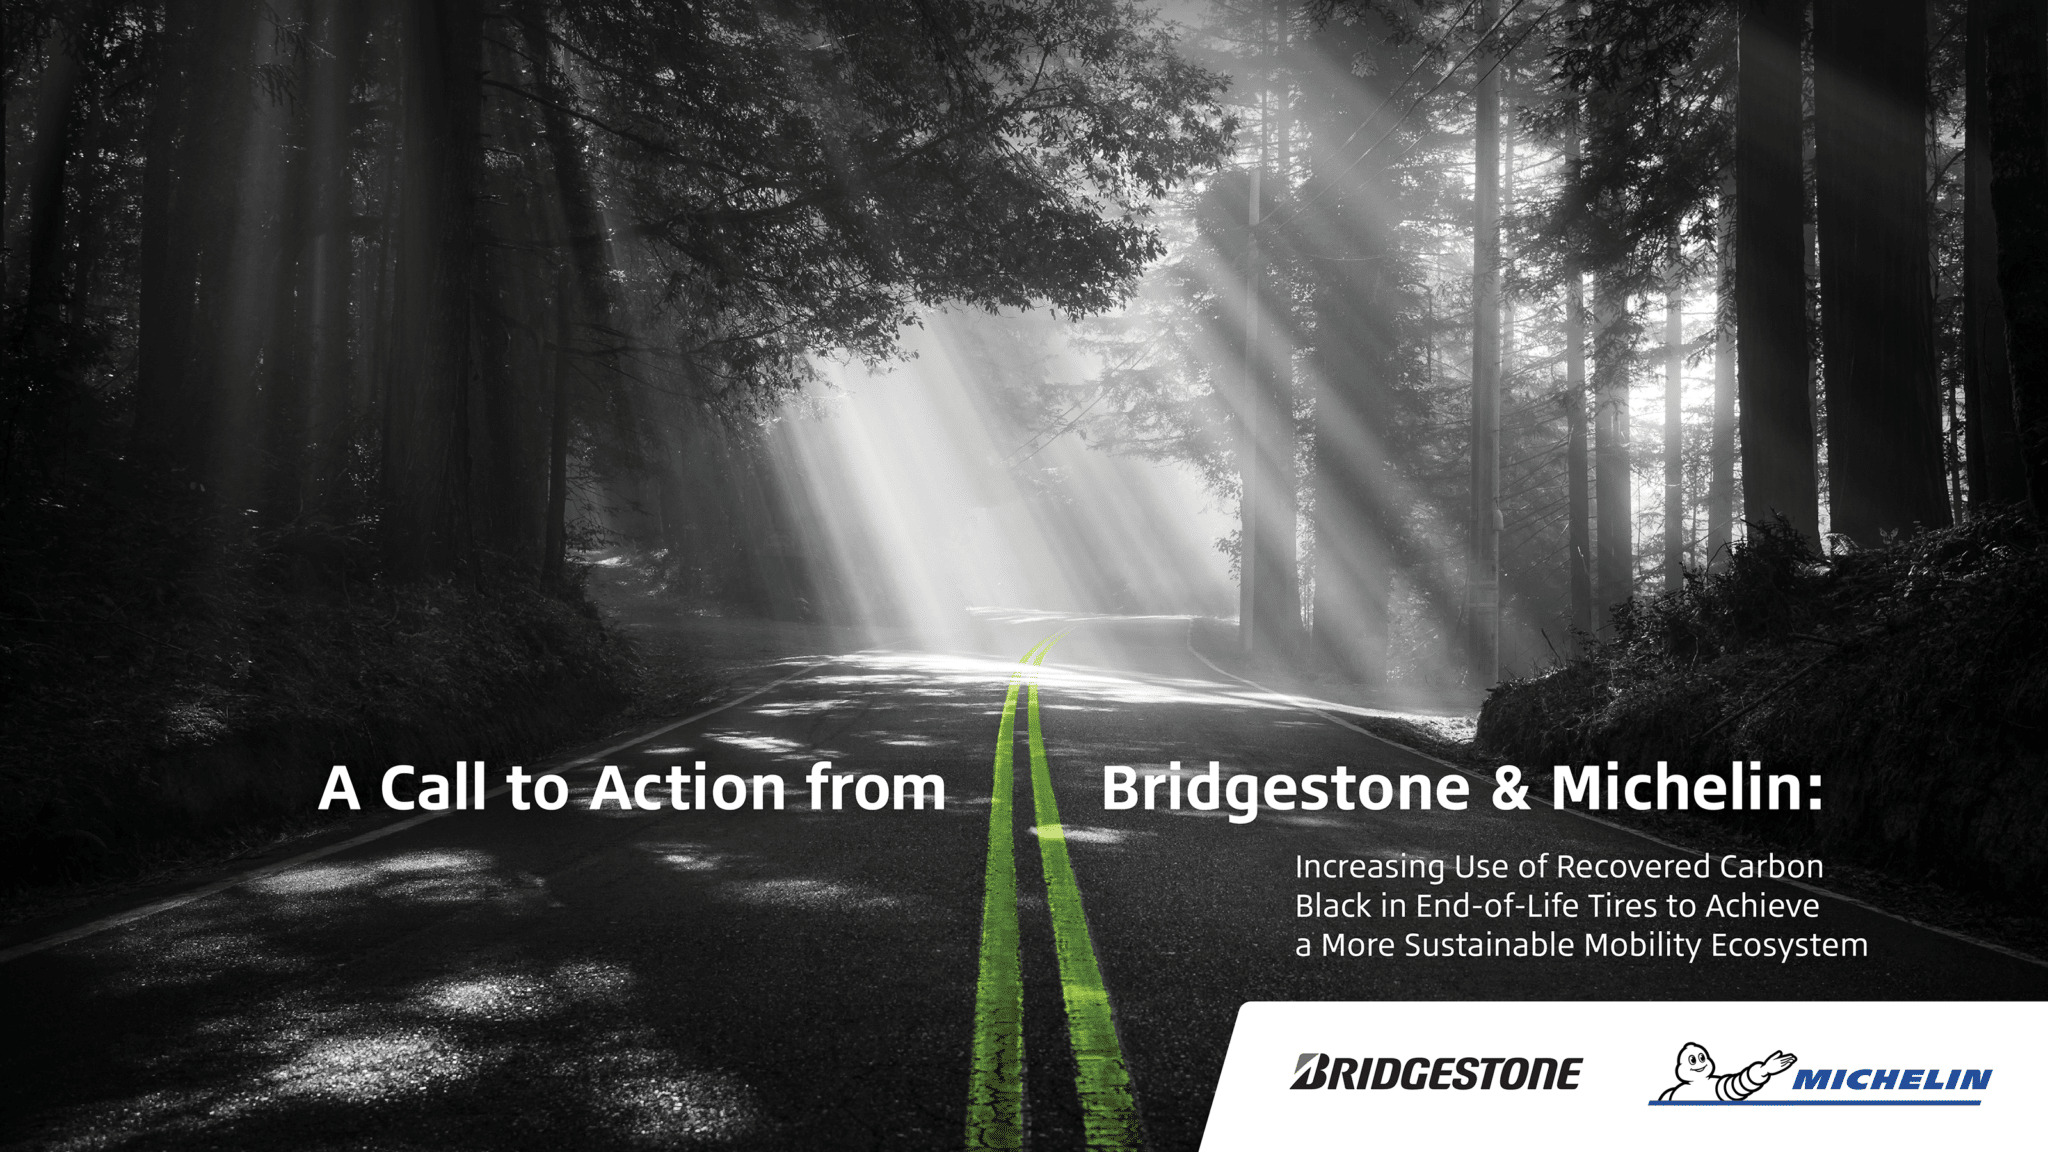 Bridgestone et Michelin organisent une présentation commune sur le rôle du noir de carbone récupéré pour bâtir un écosystème plus durable de la mobilité